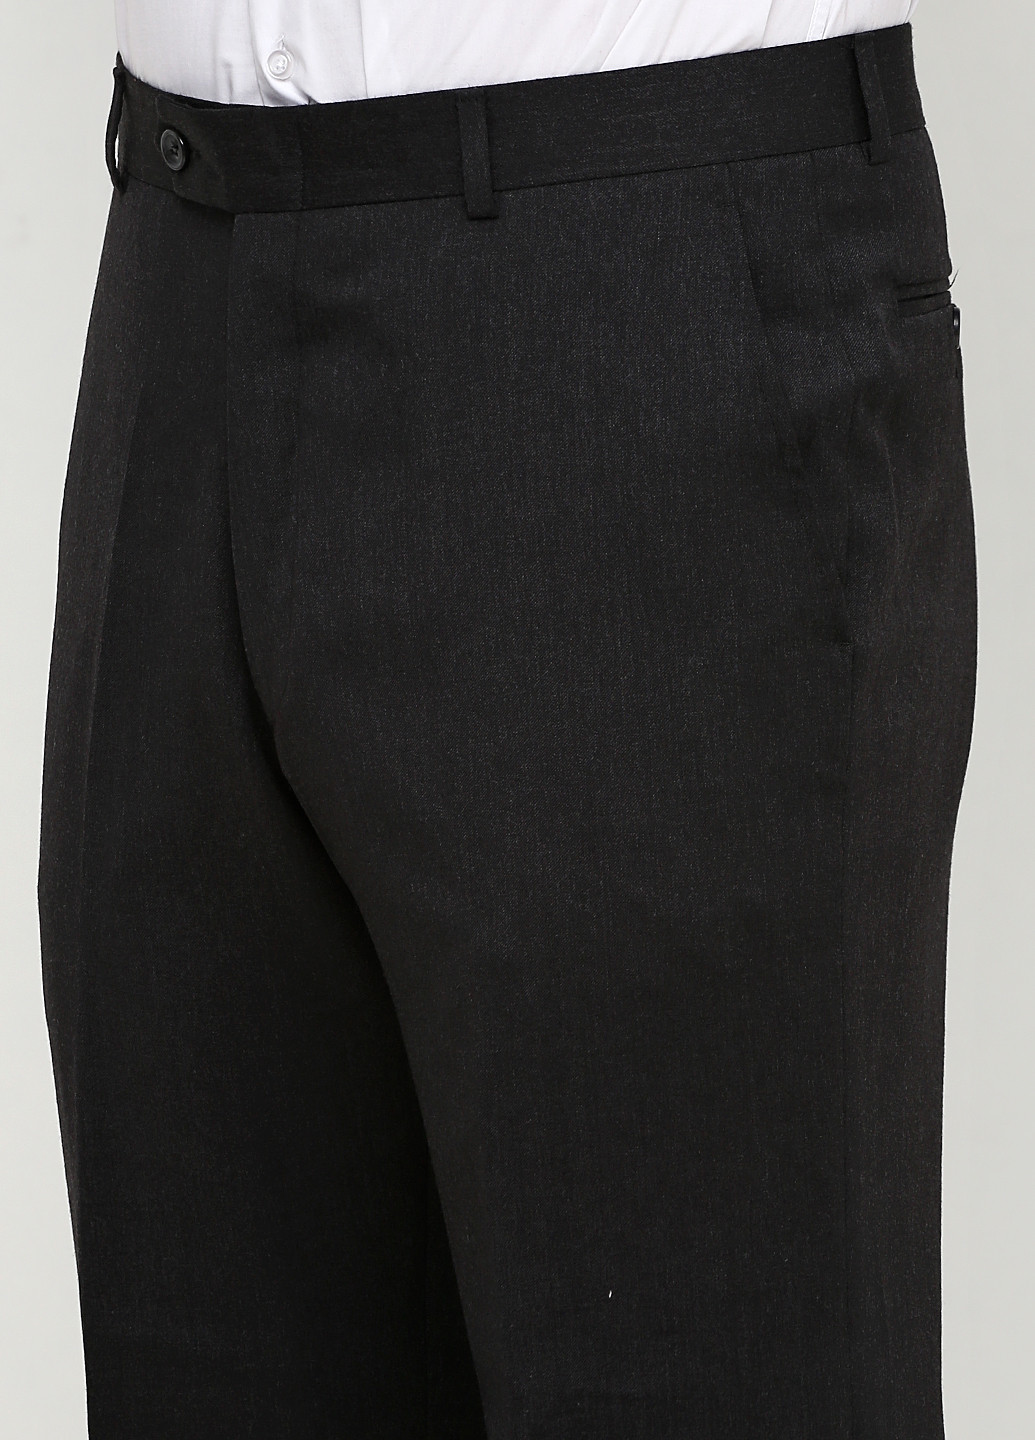 Темно-сірий демісезонний костюм (піджак, брюки) брючний Bocodo